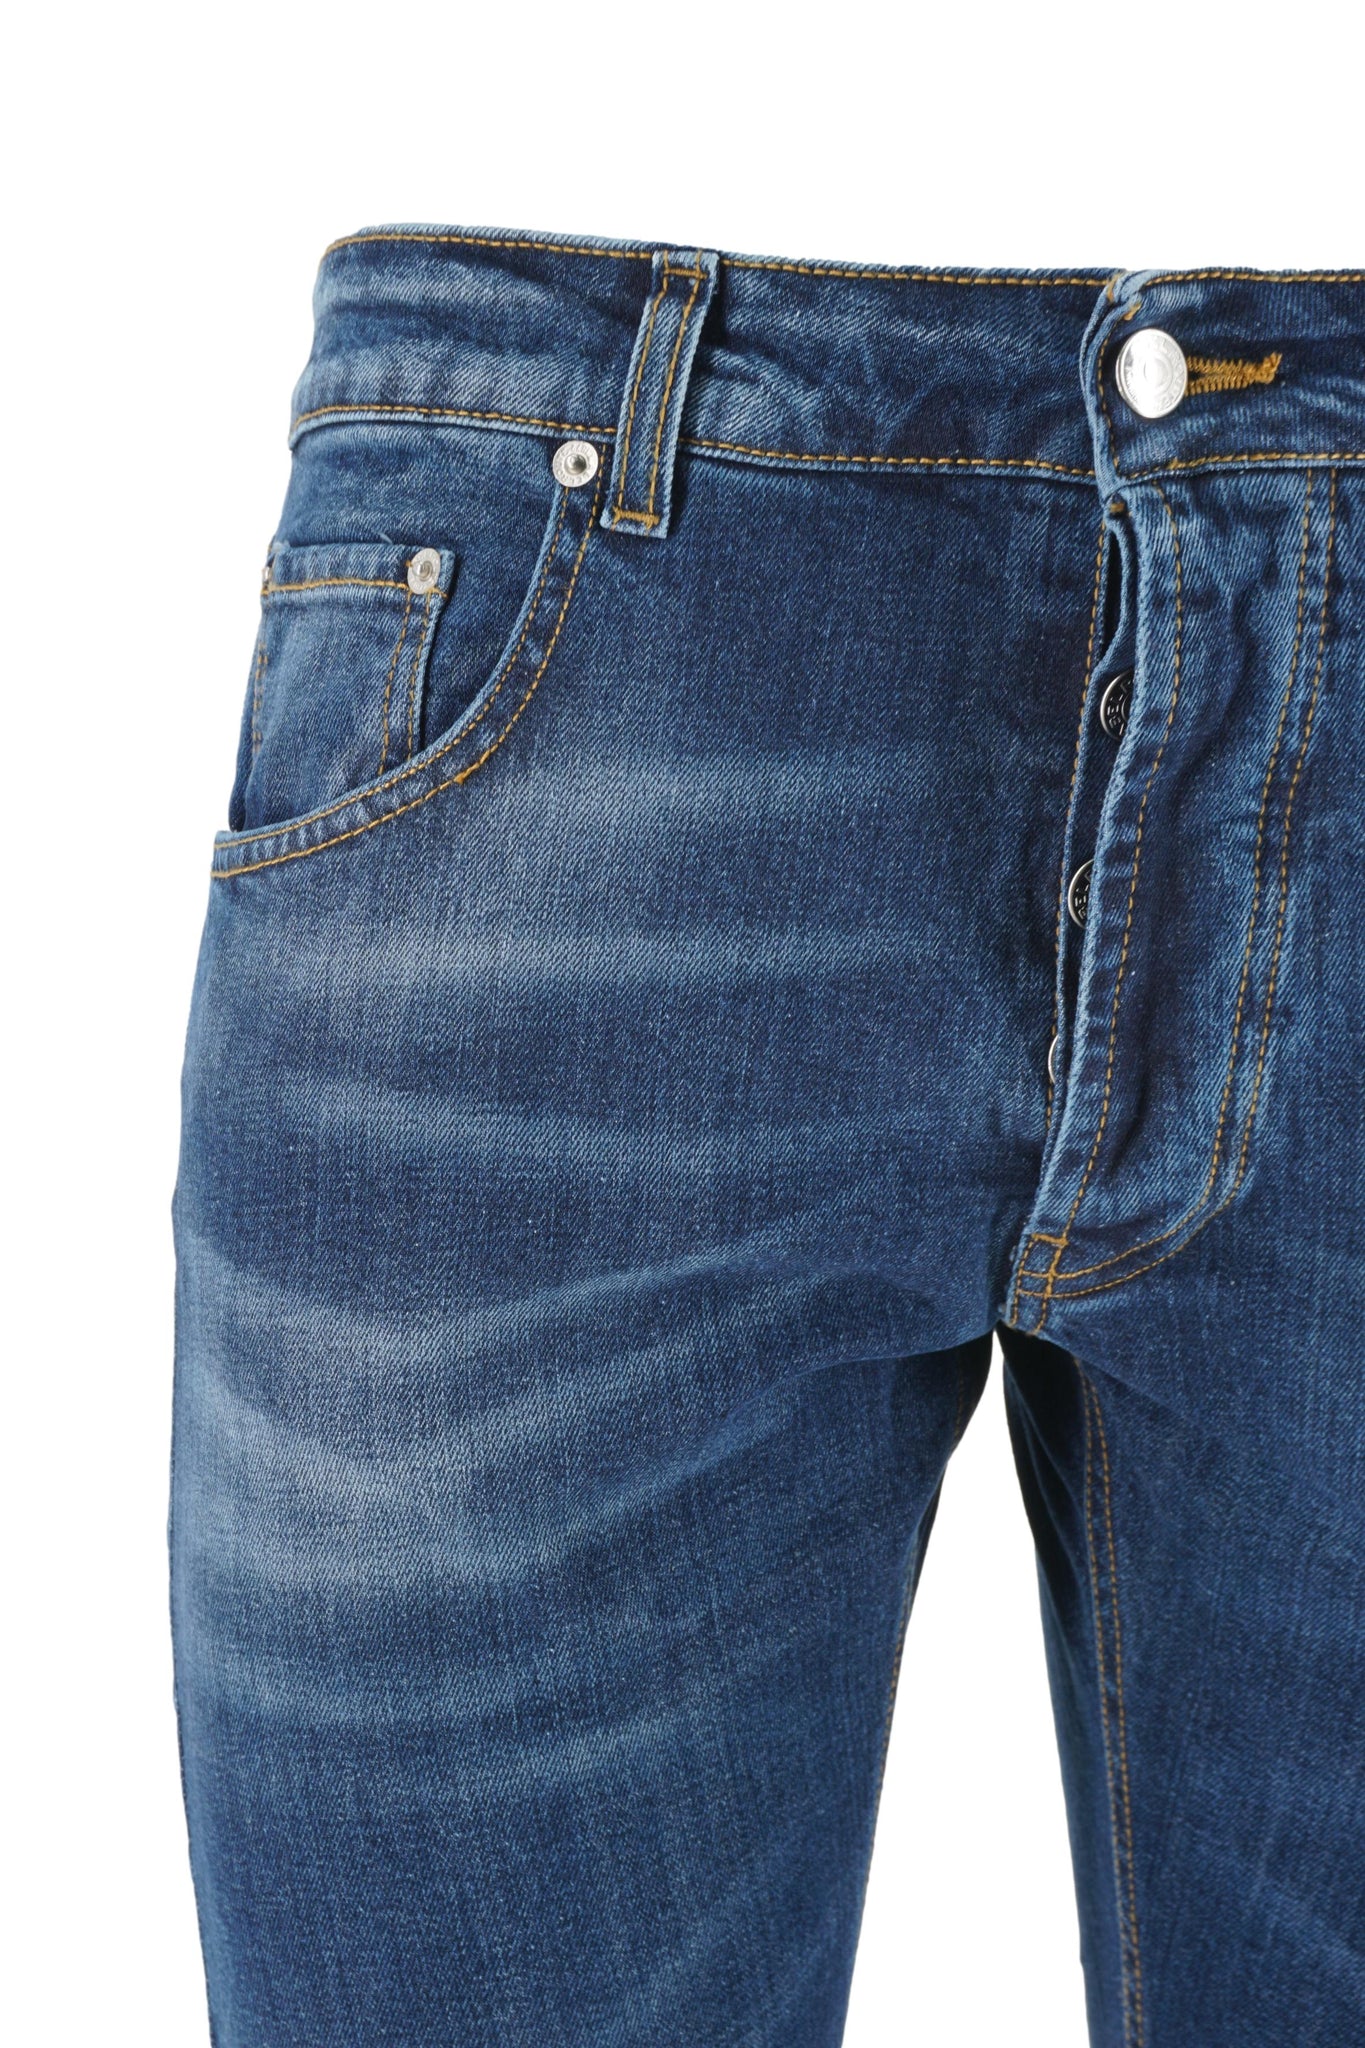 Jeans Simon Lavaggio Scuro / Jeans - Ideal Moda